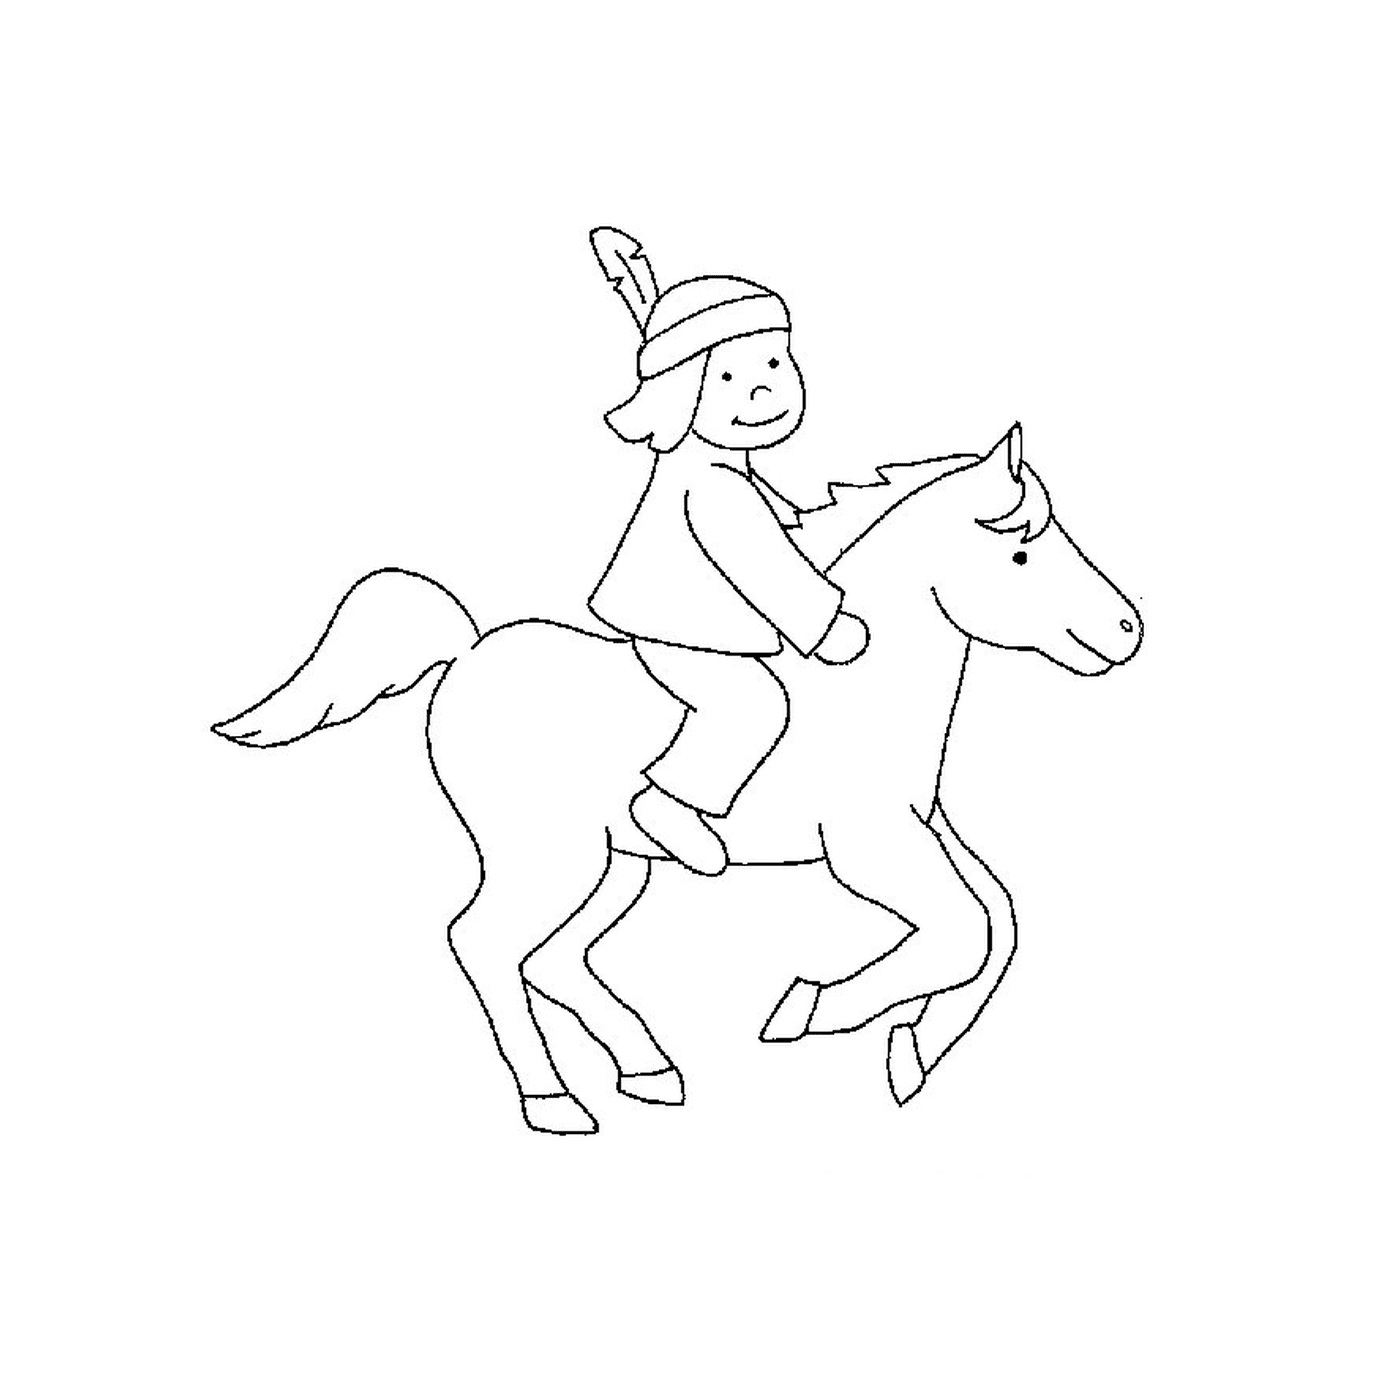  Indiano a cavallo - Una persona cavalca un cavallo 